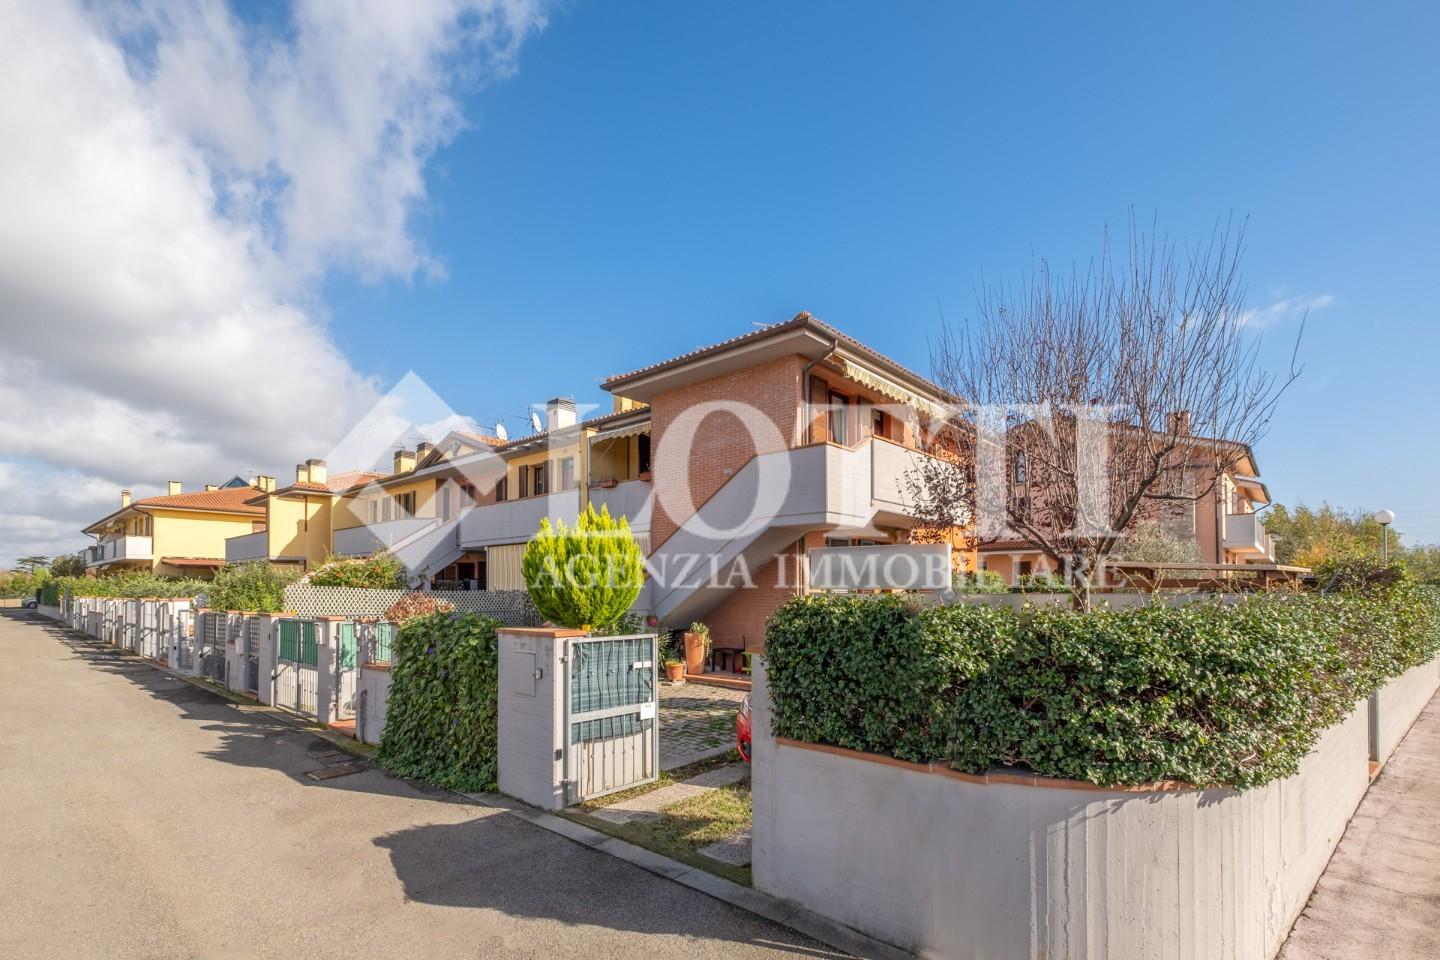 Apartment for sale in Oltrarno, Calcinaia (PI)